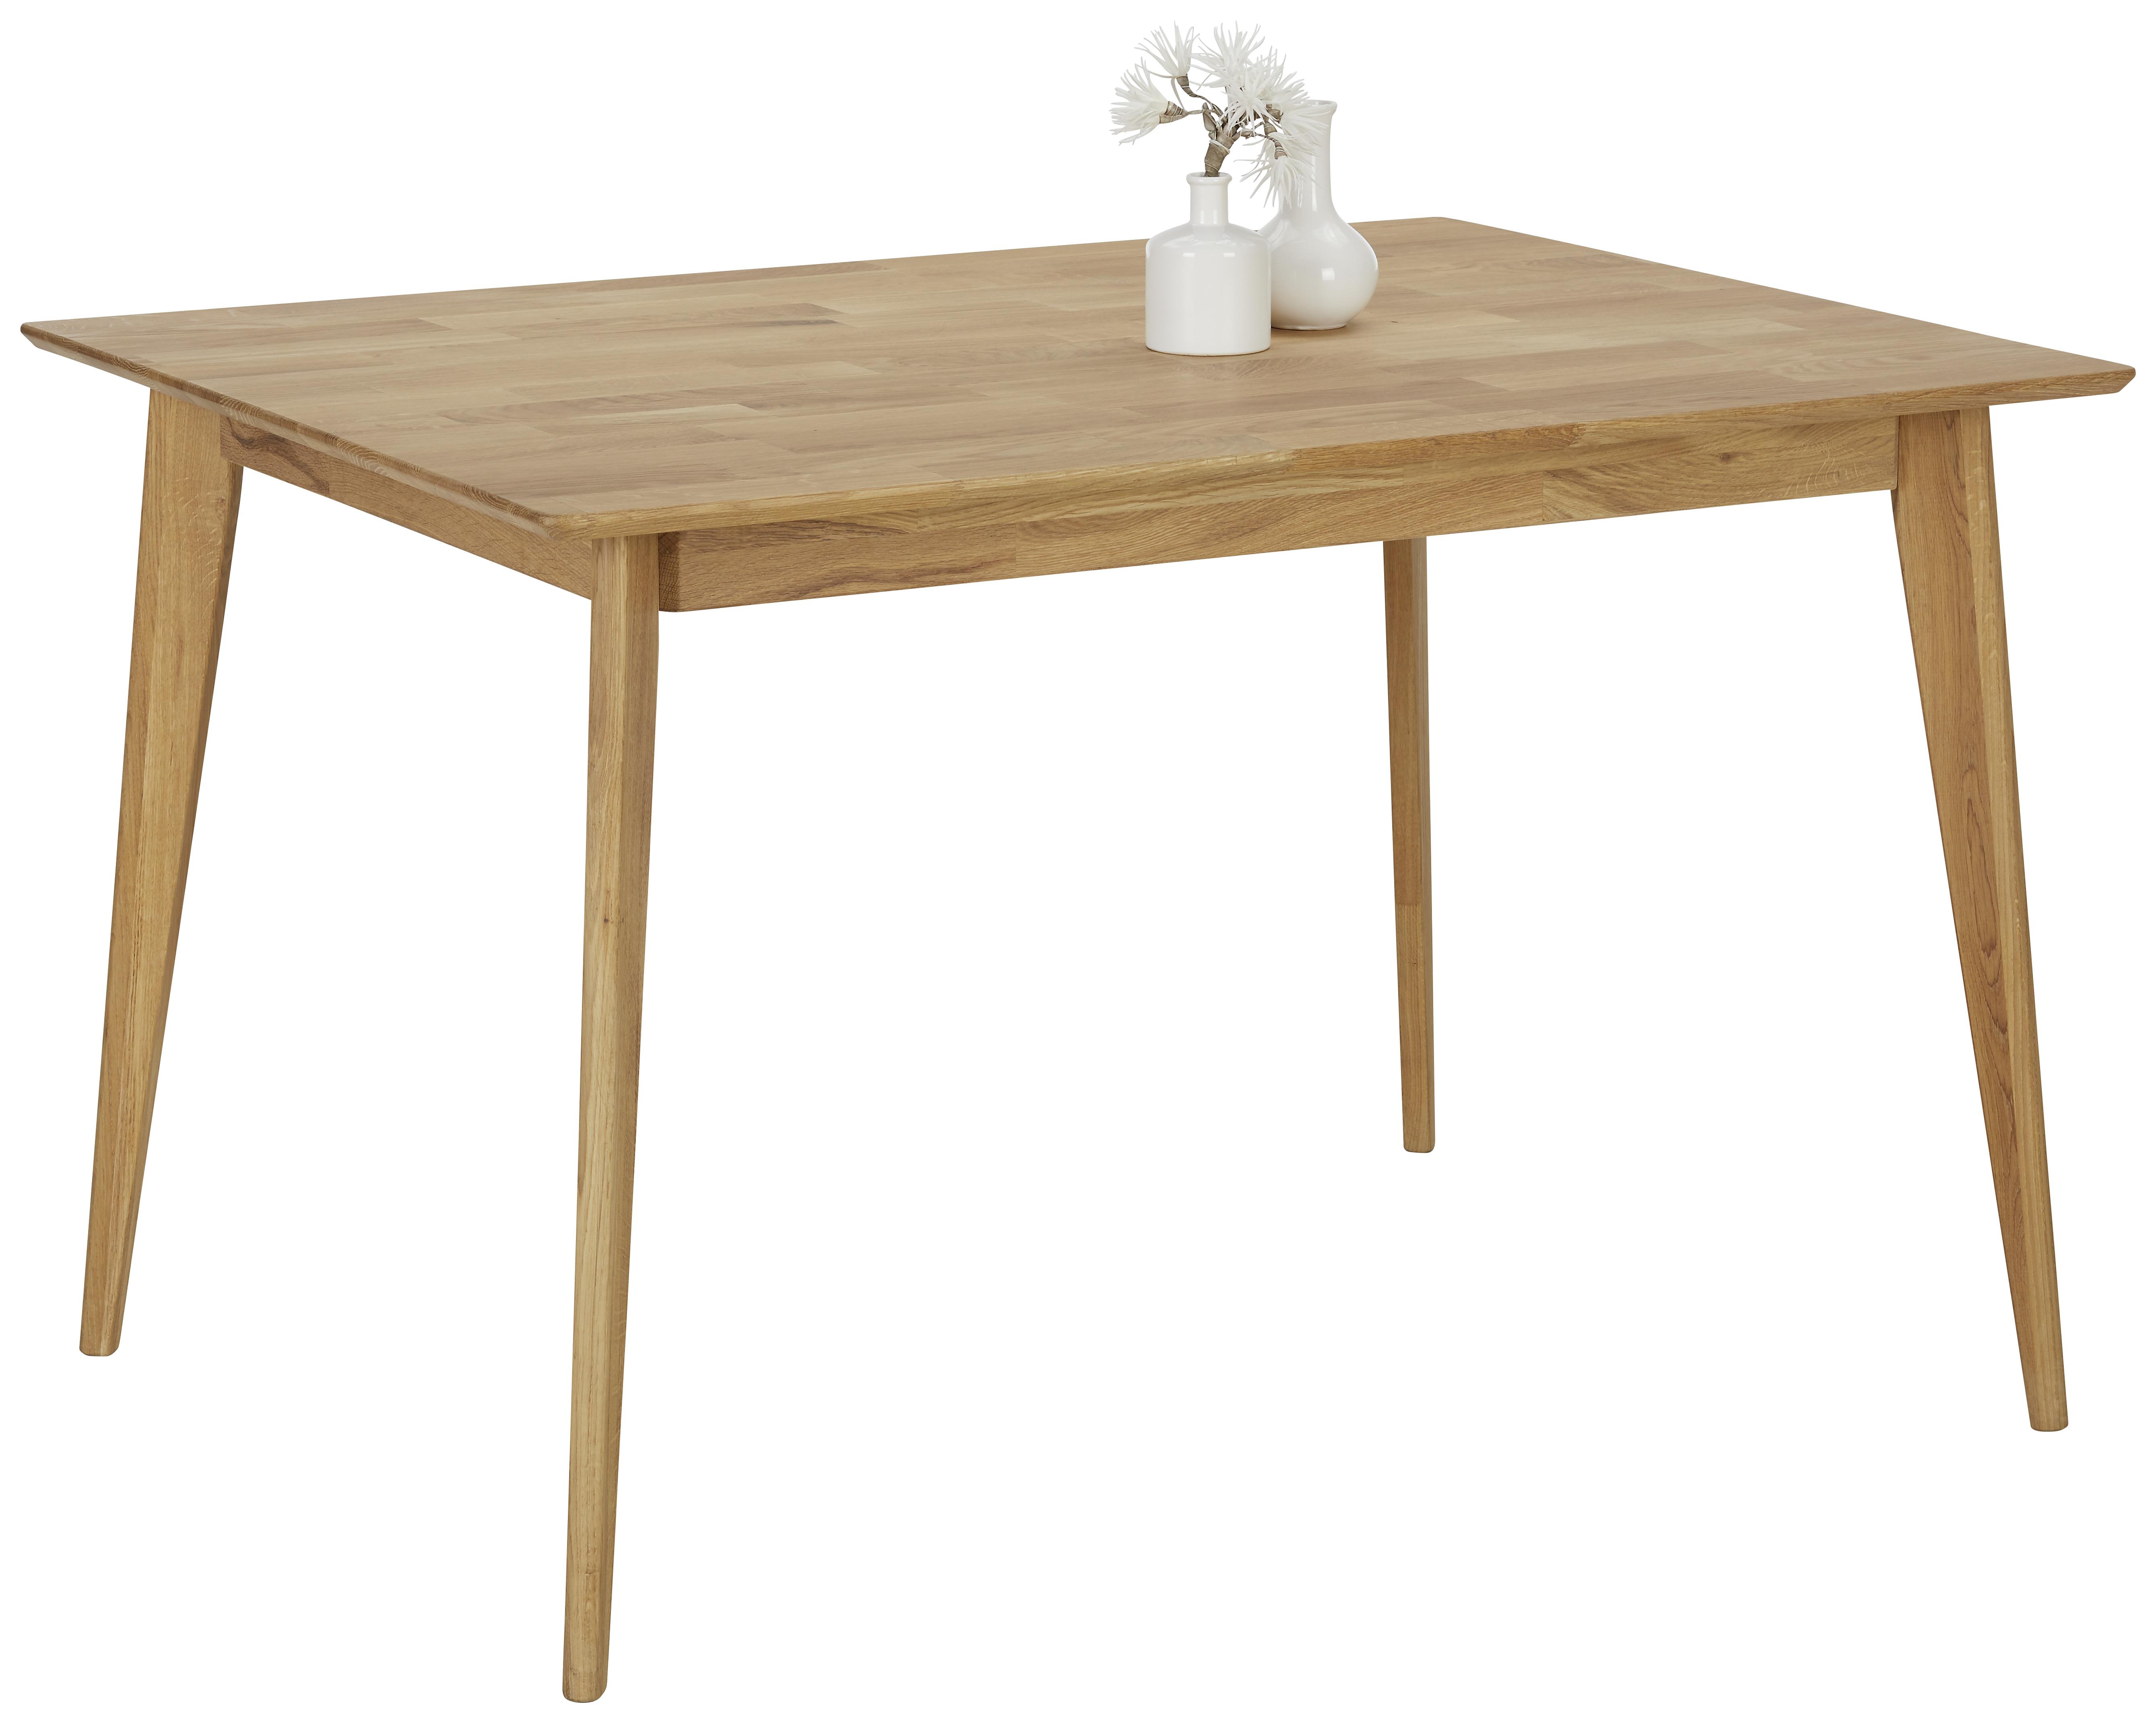 Jídelní Stůl Rita, 120x80 Cm, Divý Dub - barvy dubu, Konvenční, dřevo (120/80/75cm) - Zandiara